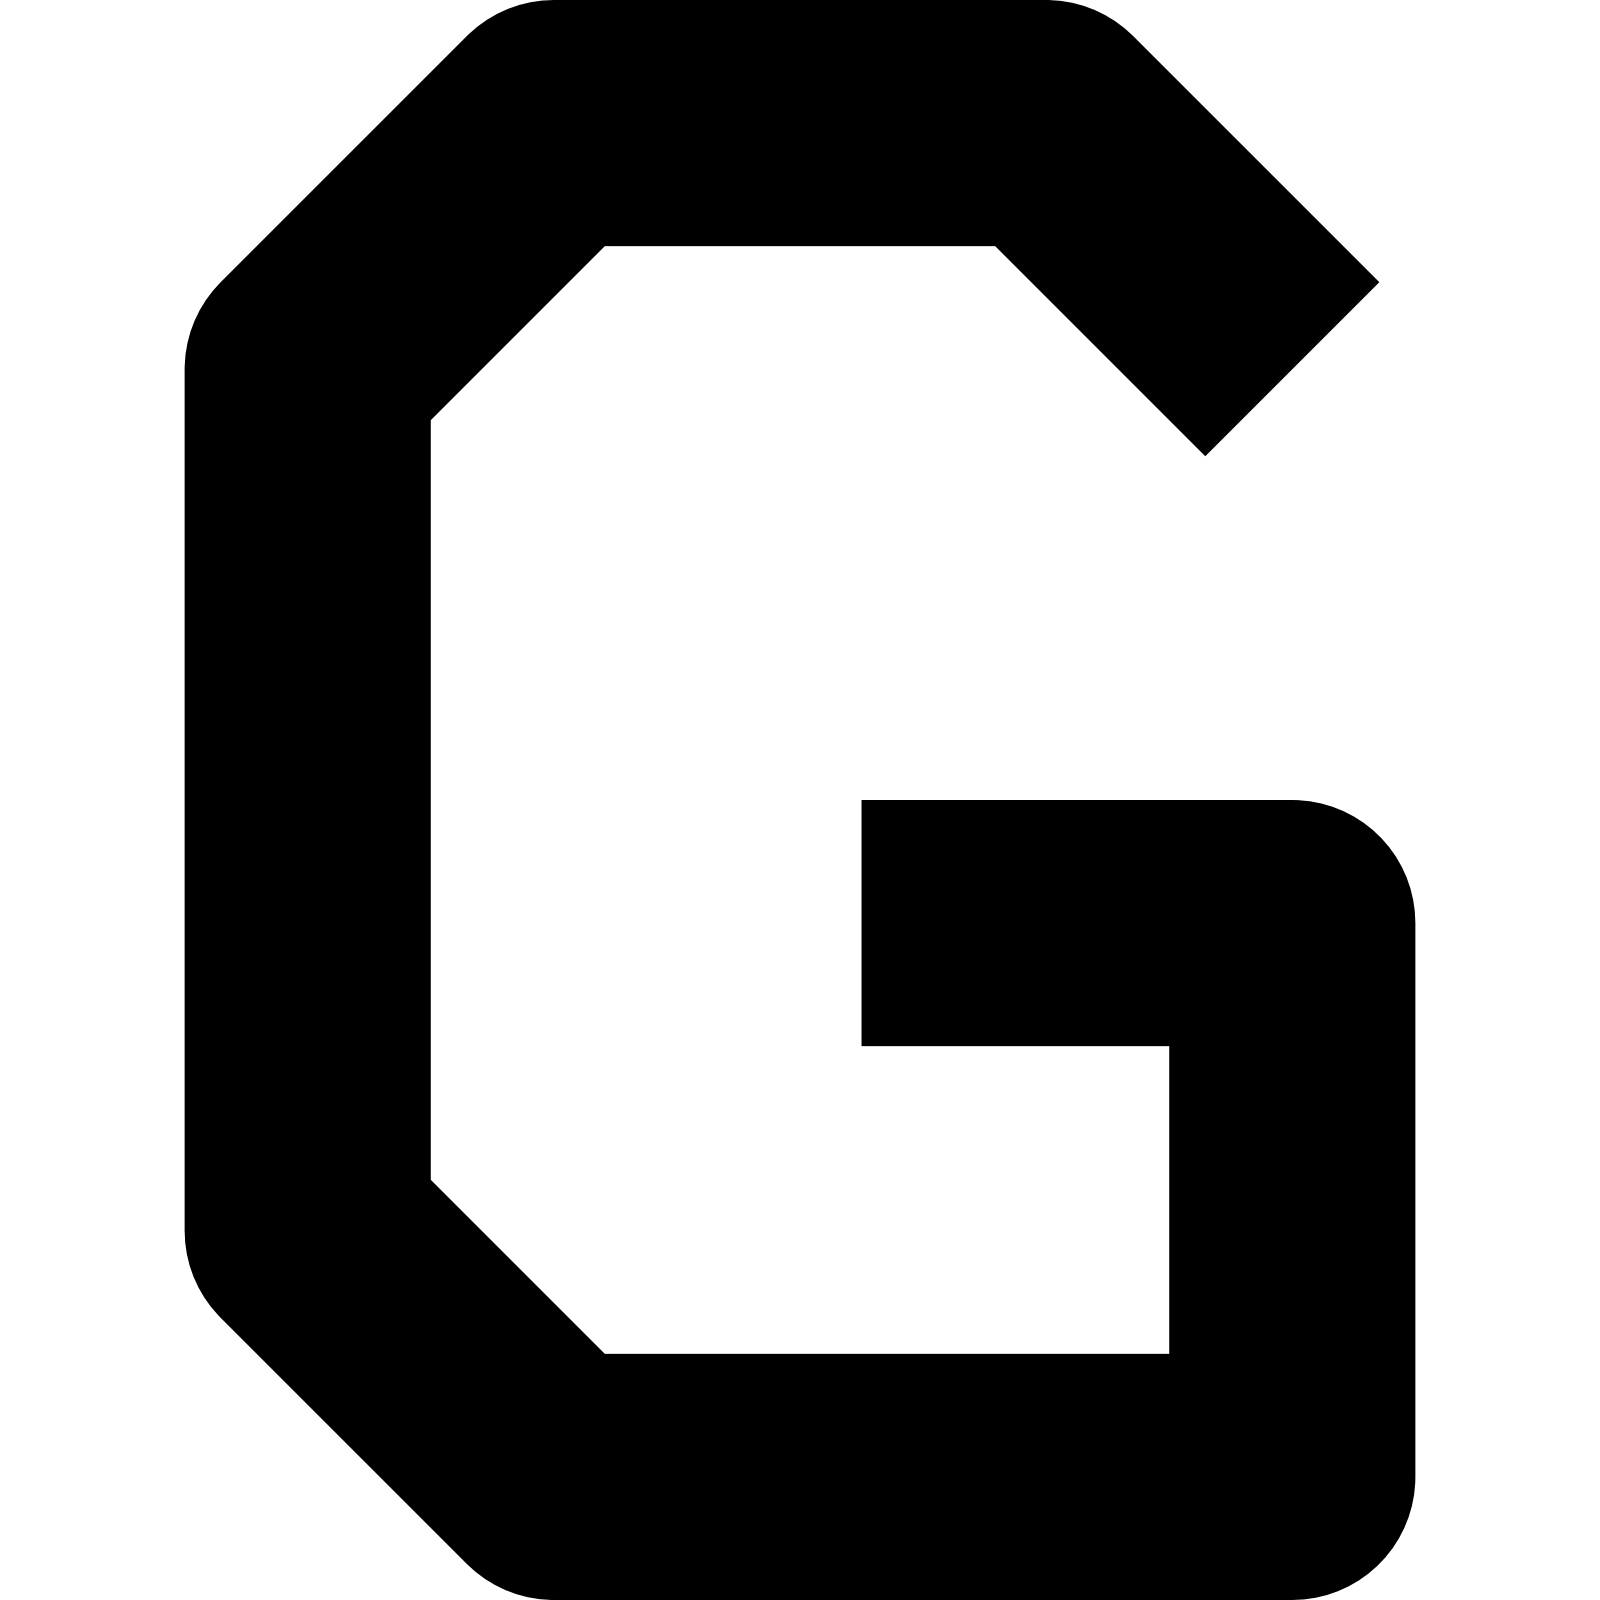 Litera G